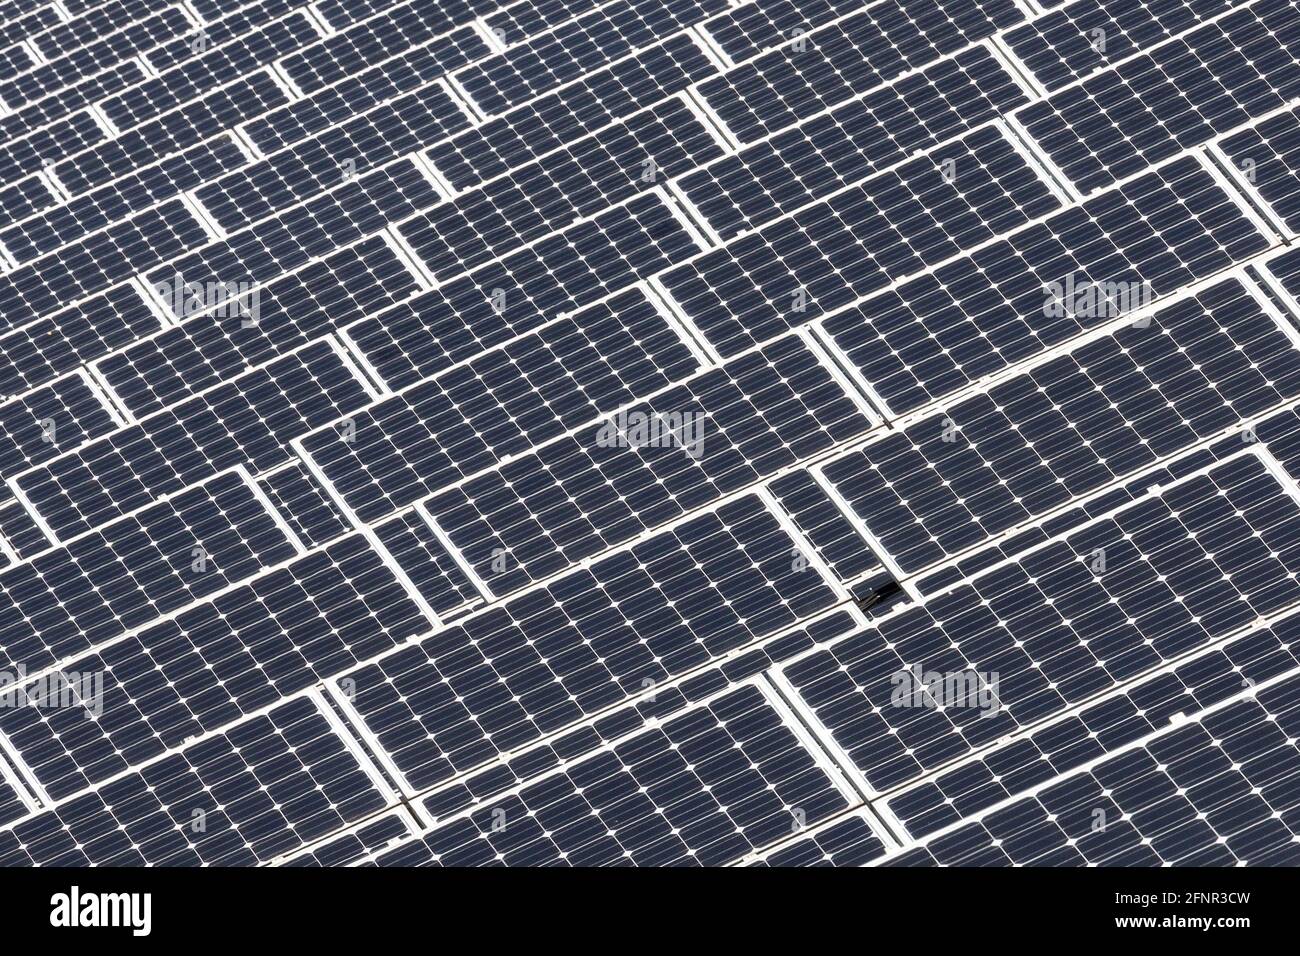 Un grand champ avec des modules photovoltaïques pour la production d'énergie solaire Banque D'Images